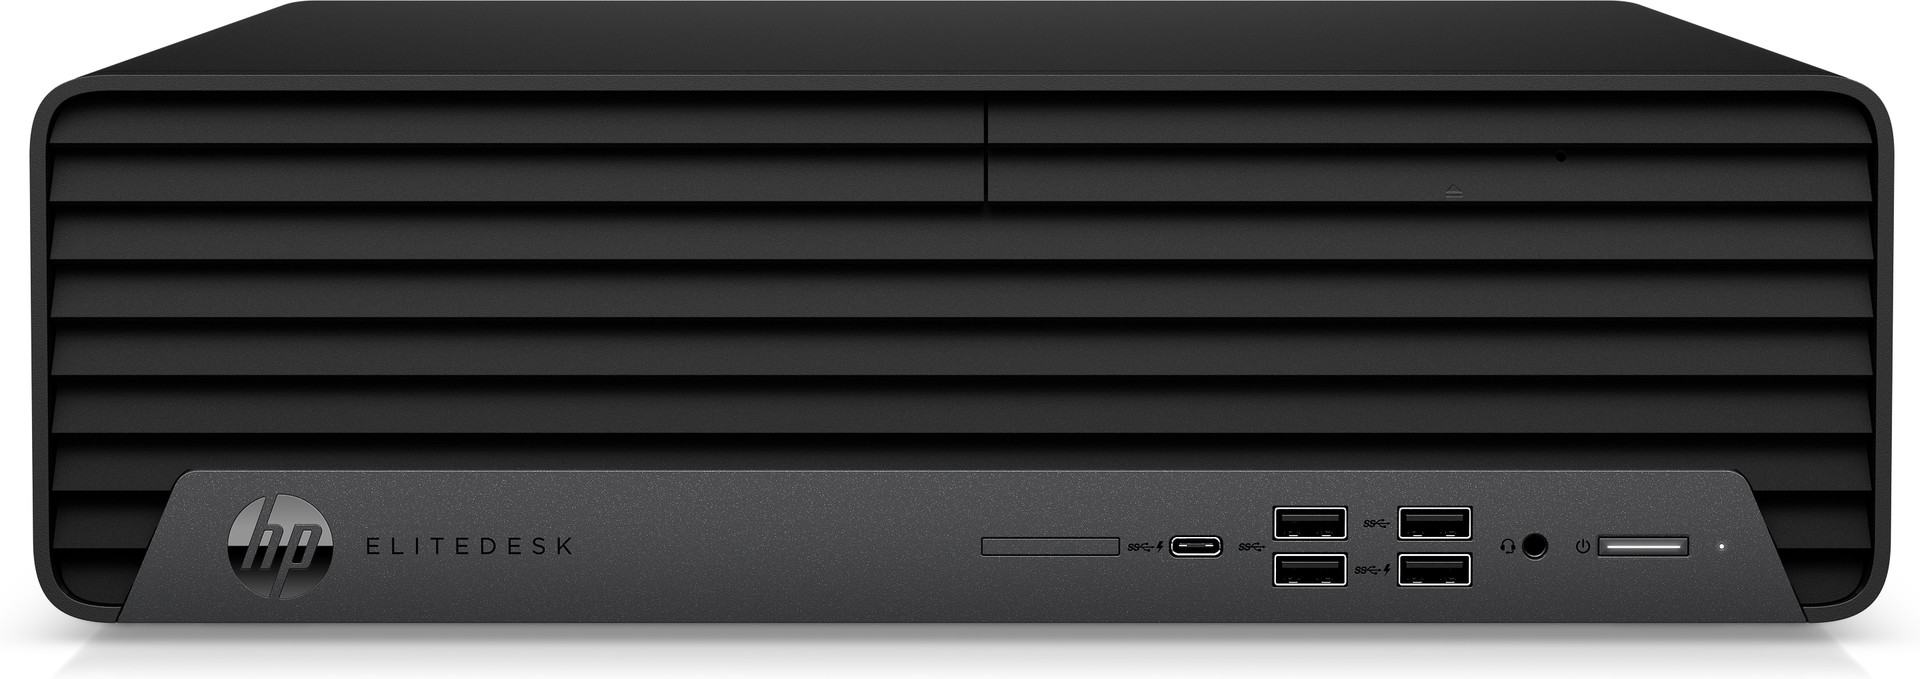 PC HP EliteDesk 800 G6 SFF i5-10500, 8GB, 1TB HDD, W10P6 64bit, 3-3-3 Wty